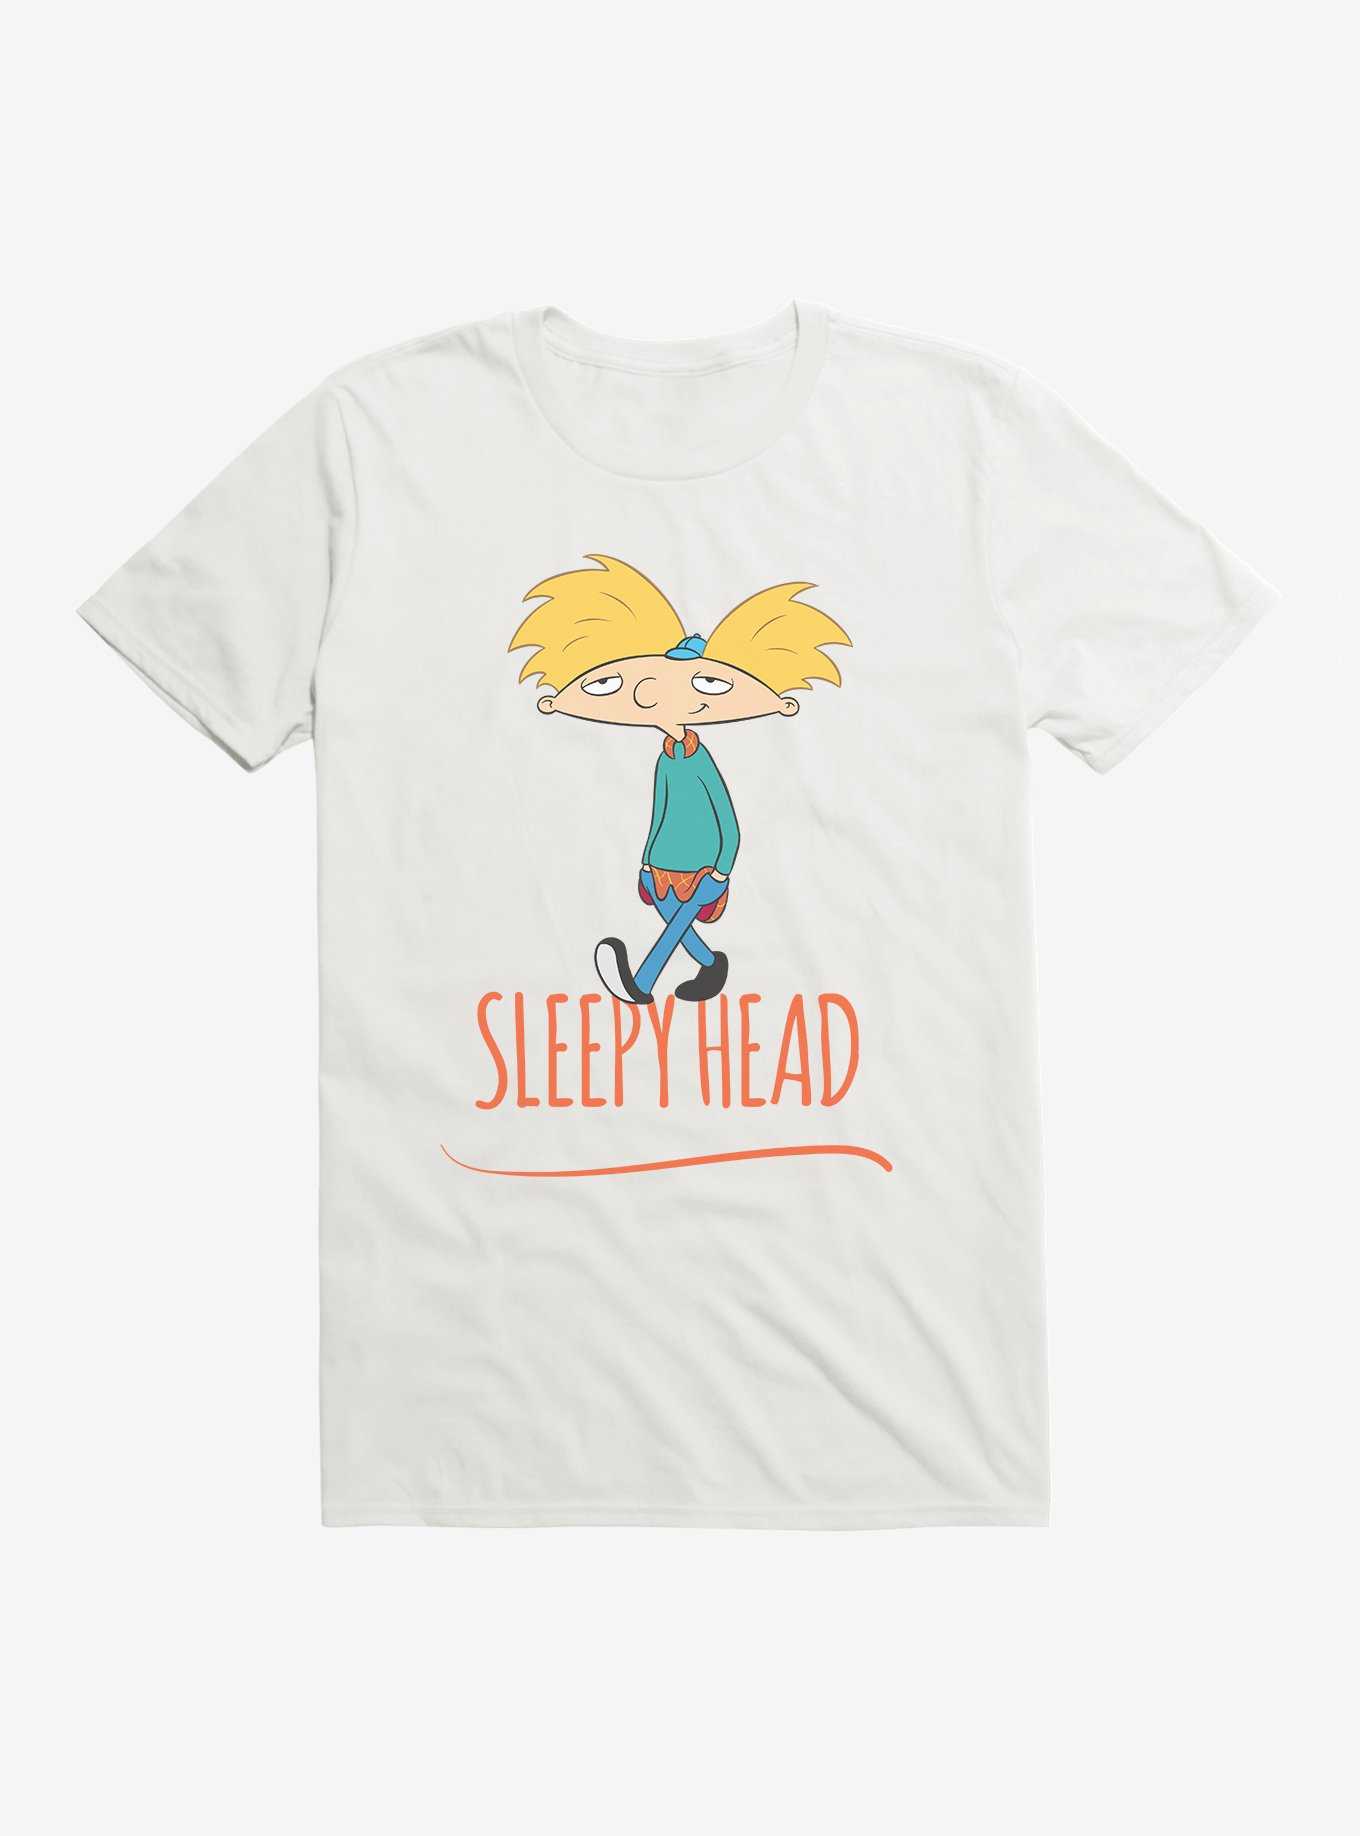 Hey Arnold! Sleepy Head T-Shirt, , hi-res